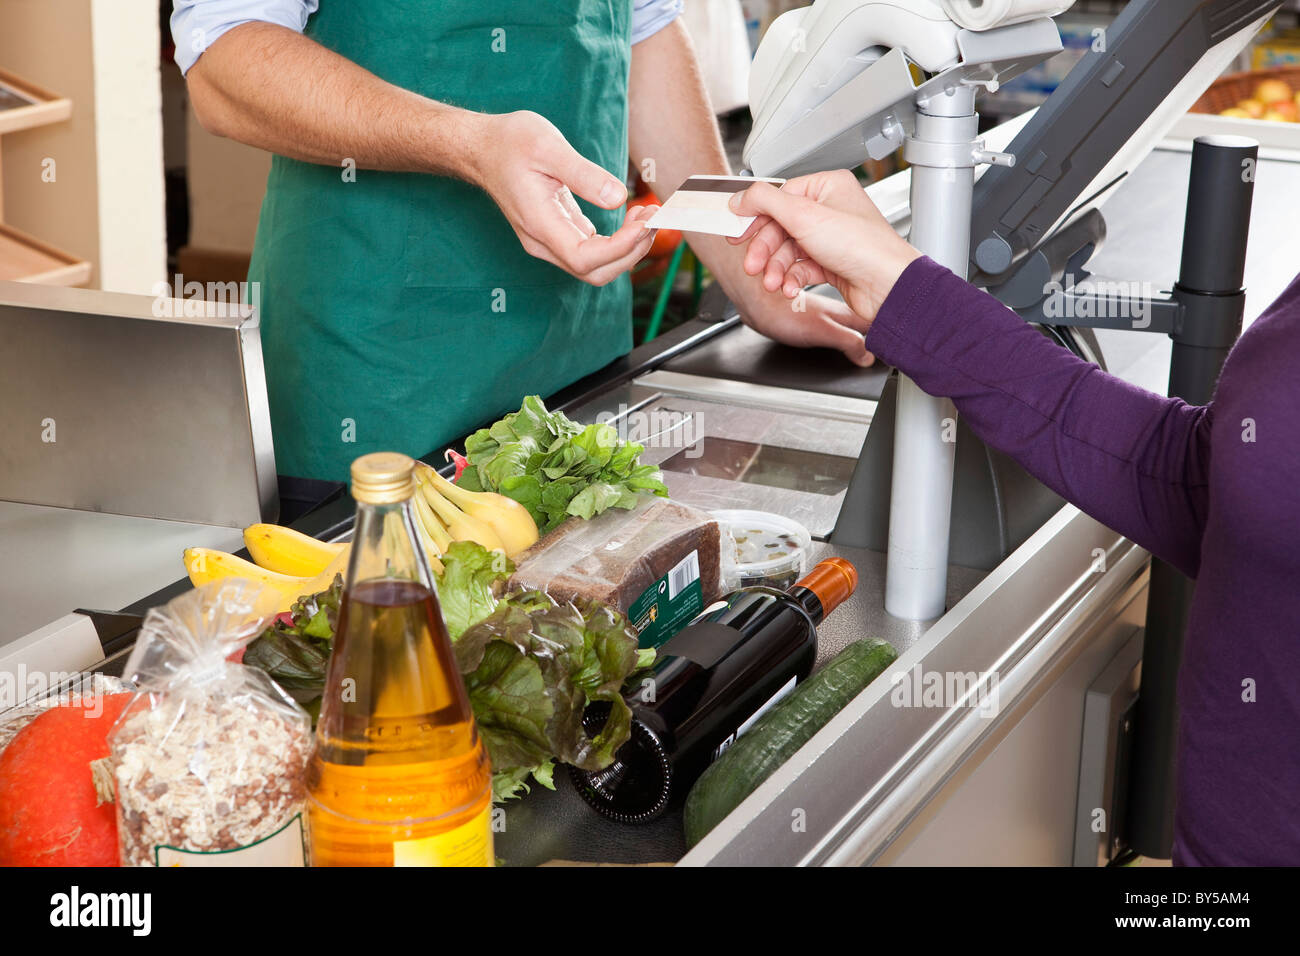 Ein Kunde übergibt einer Kassiererin eine Kreditkarte im Supermarkt Stockfoto